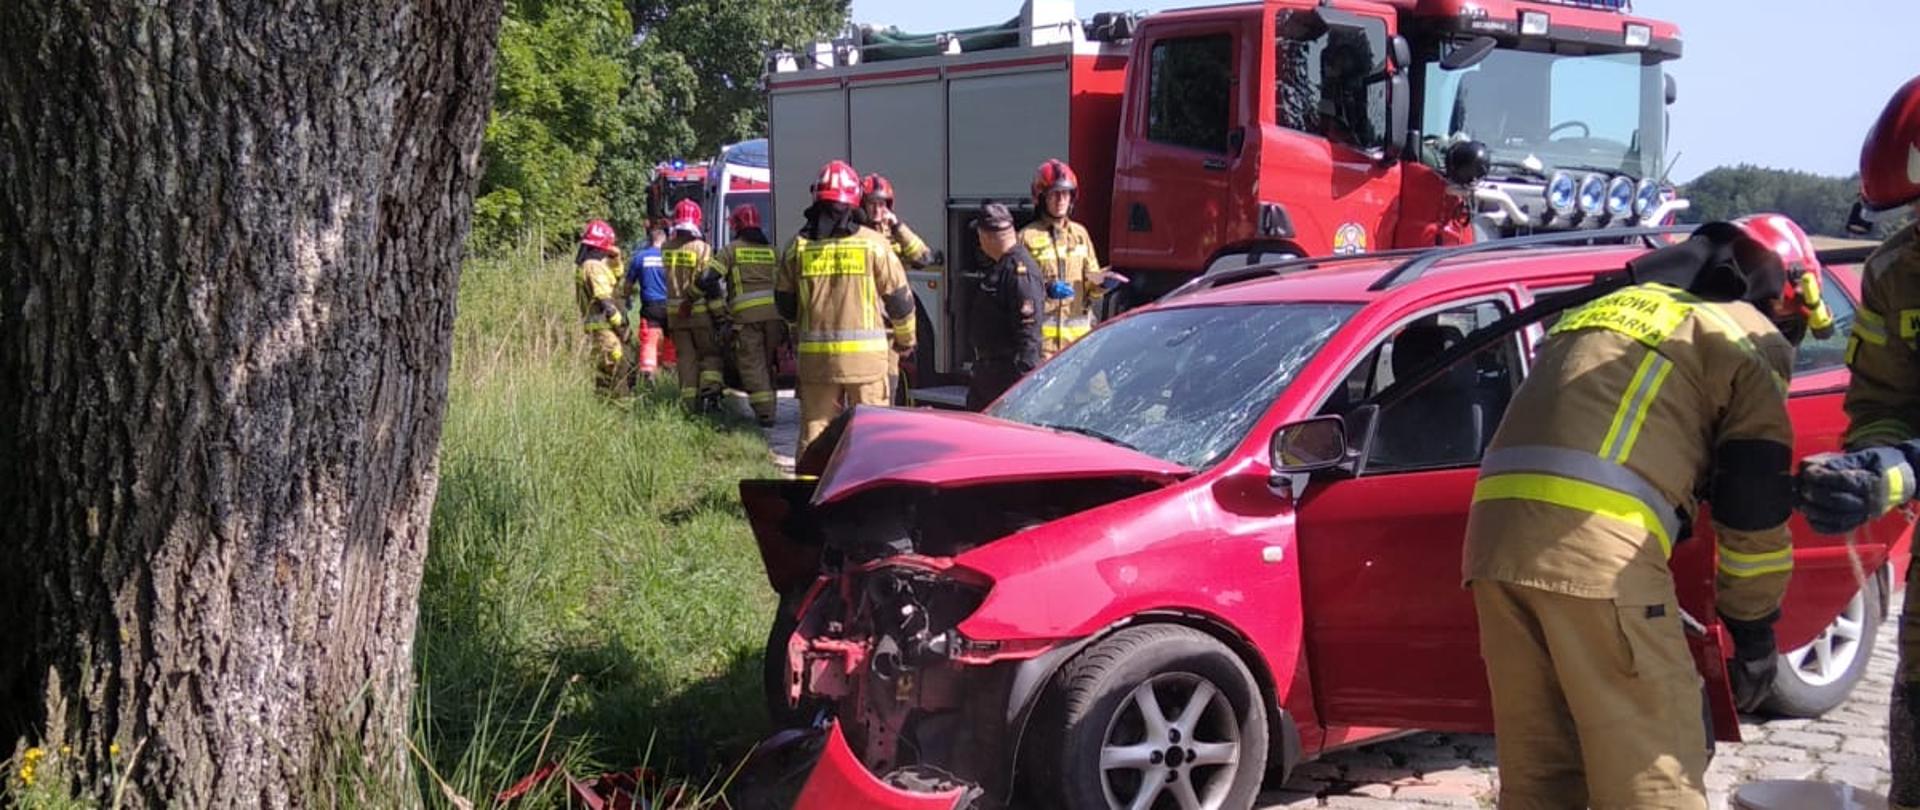 Czerwona Toyota rozbita o drzewo. Przy rozbitym aucie strażacy, w oddali samochód strażacki i strażacy.